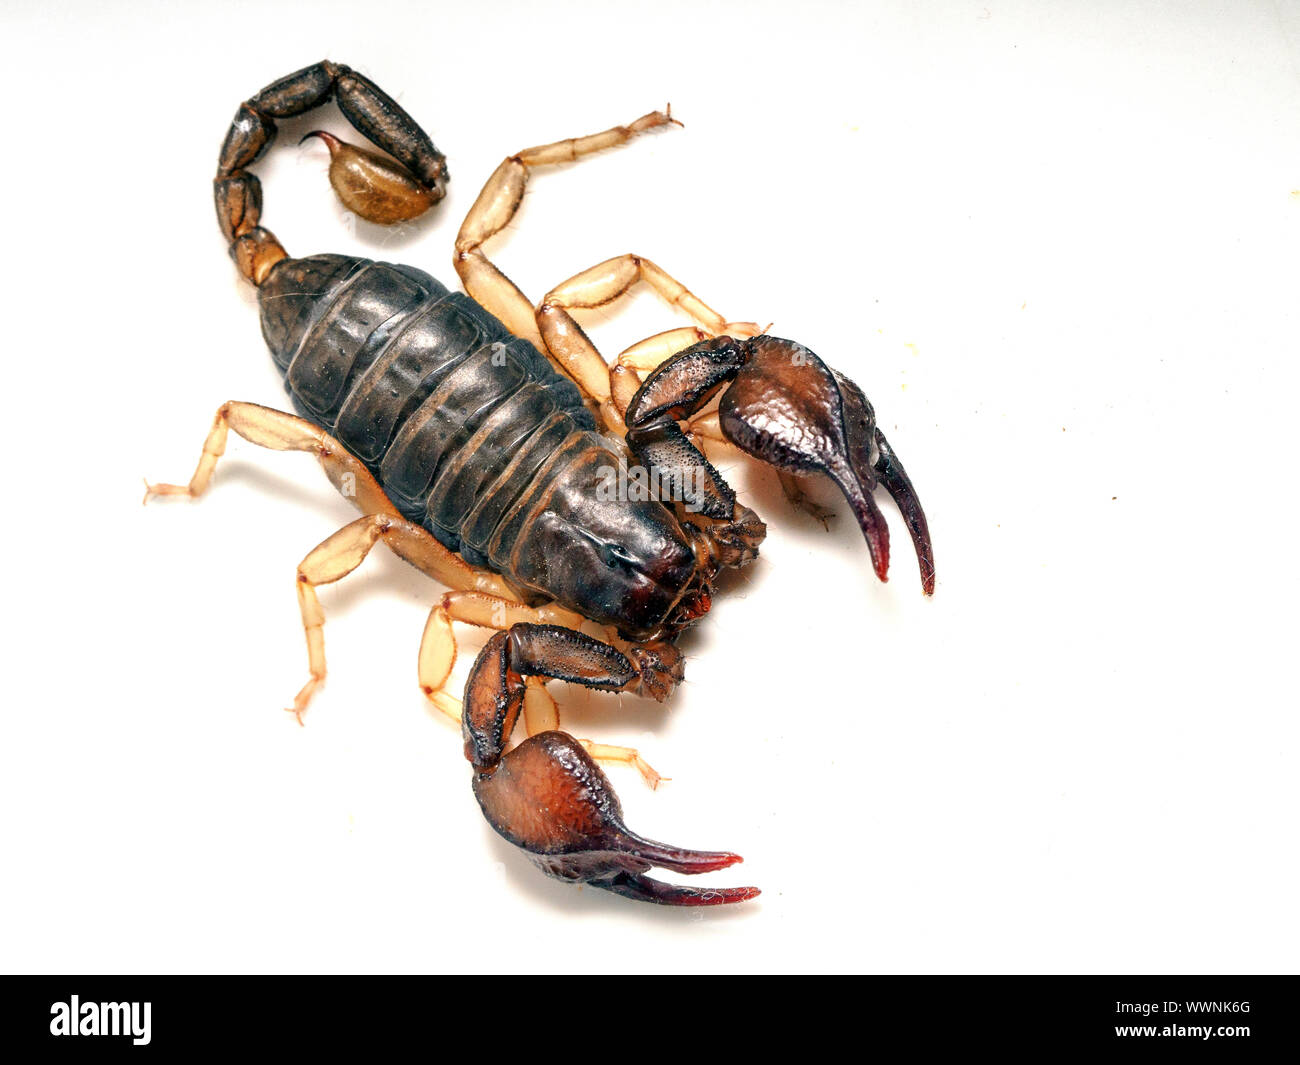 Italian scorpion (Euscorpius italicus) Stock Photo